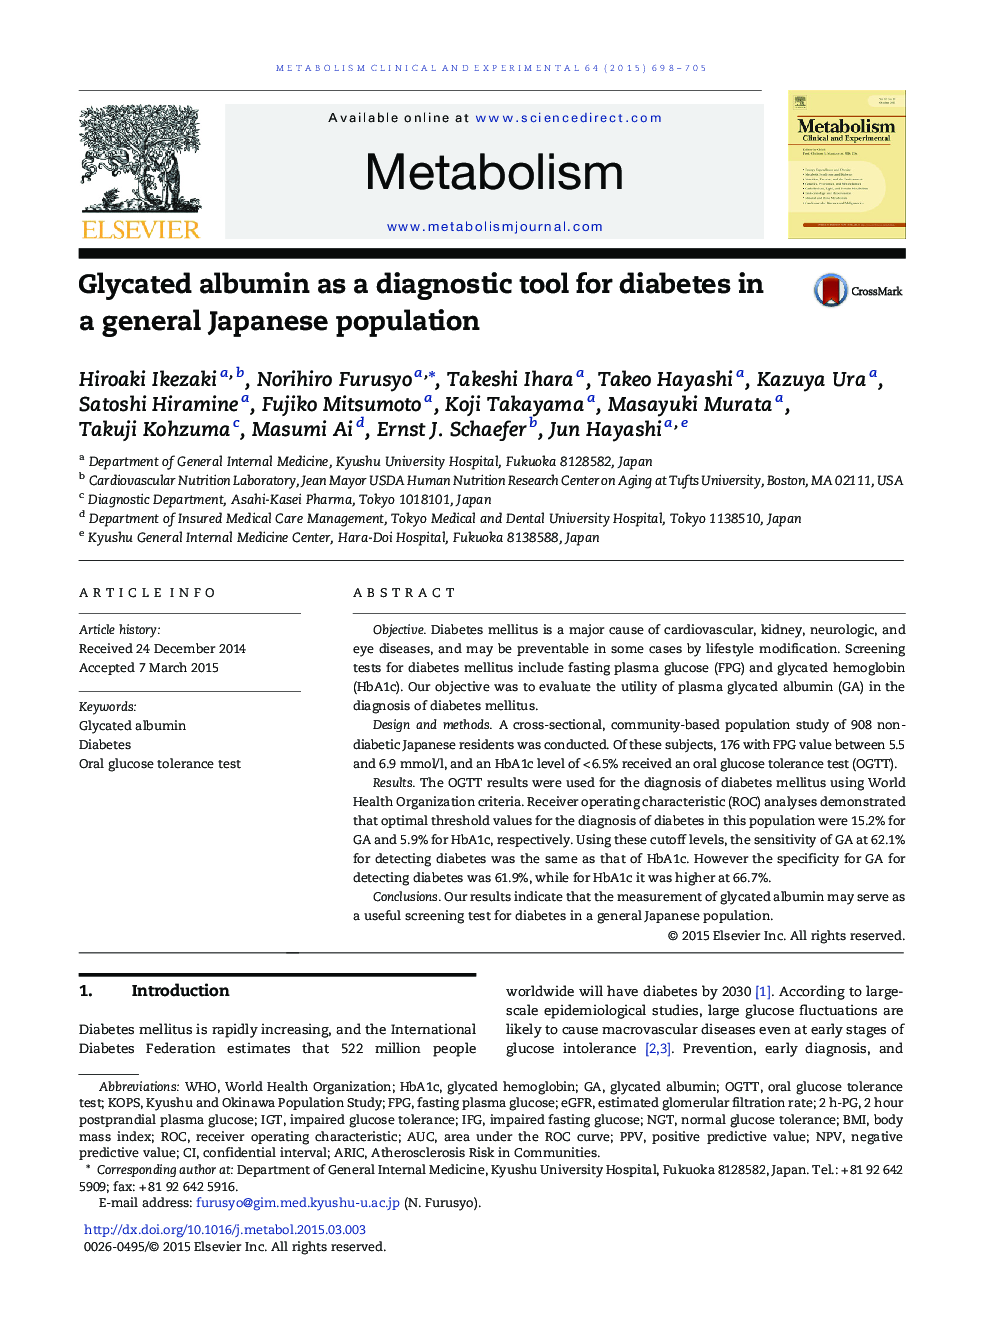 آلبومین گلیکوز شده به عنوان یک ابزار تشخیصی برای دیابت در جمعیت عمومی ژاپن 